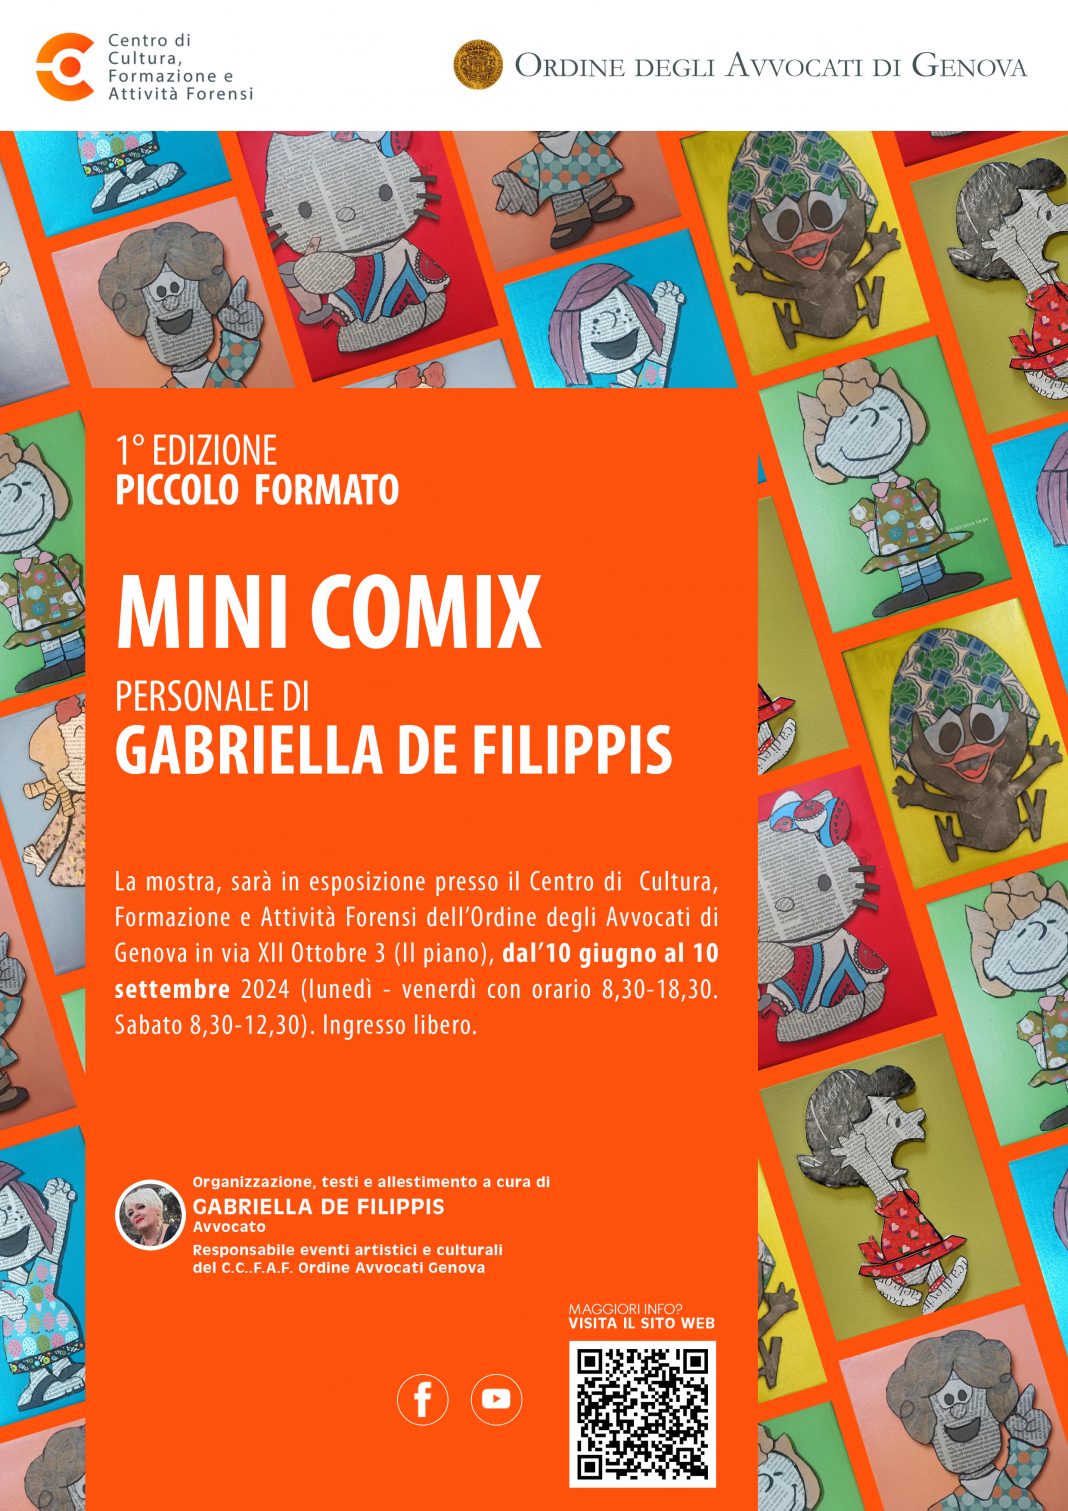 Gabriella de Filippis – MINI COMIX | 1° edizione PICCOLO FORMATOhttps://www.exibart.com/repository/media/formidable/11/img/a52/MINI-COMIX-di-Gabriella-de-Filippis-1068x1511.jpg